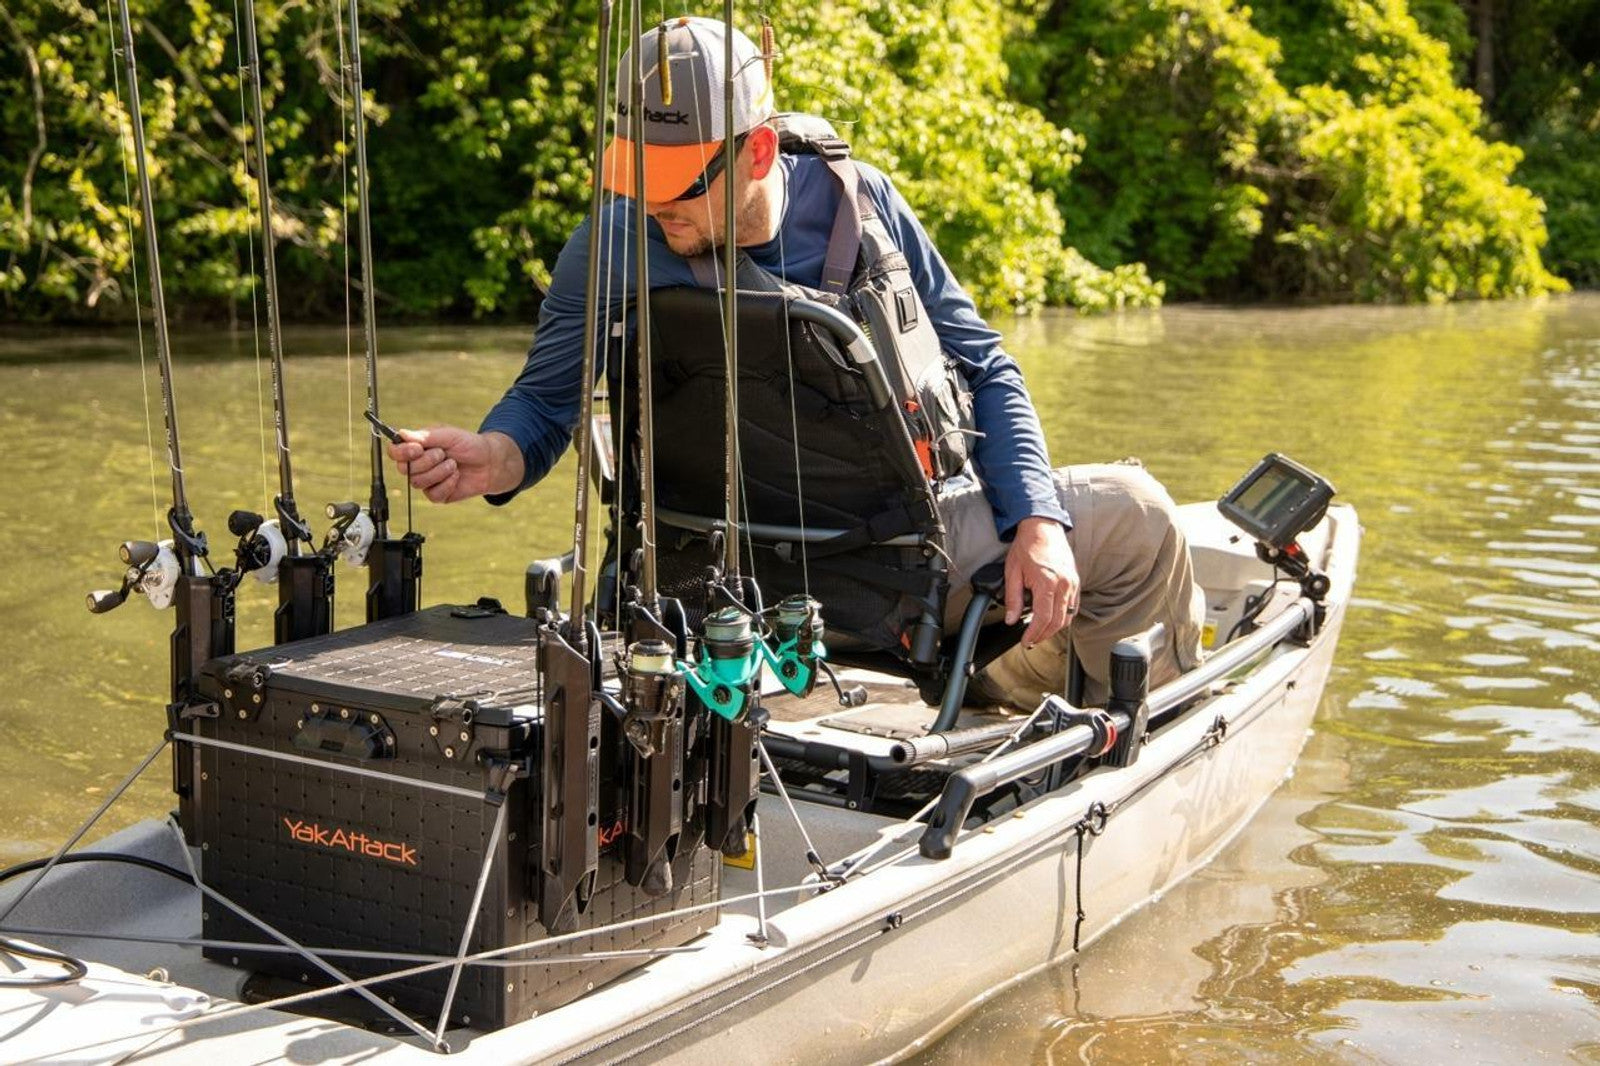 BlackPak 16x16 Pro Kayak Fishing Crate – First Water